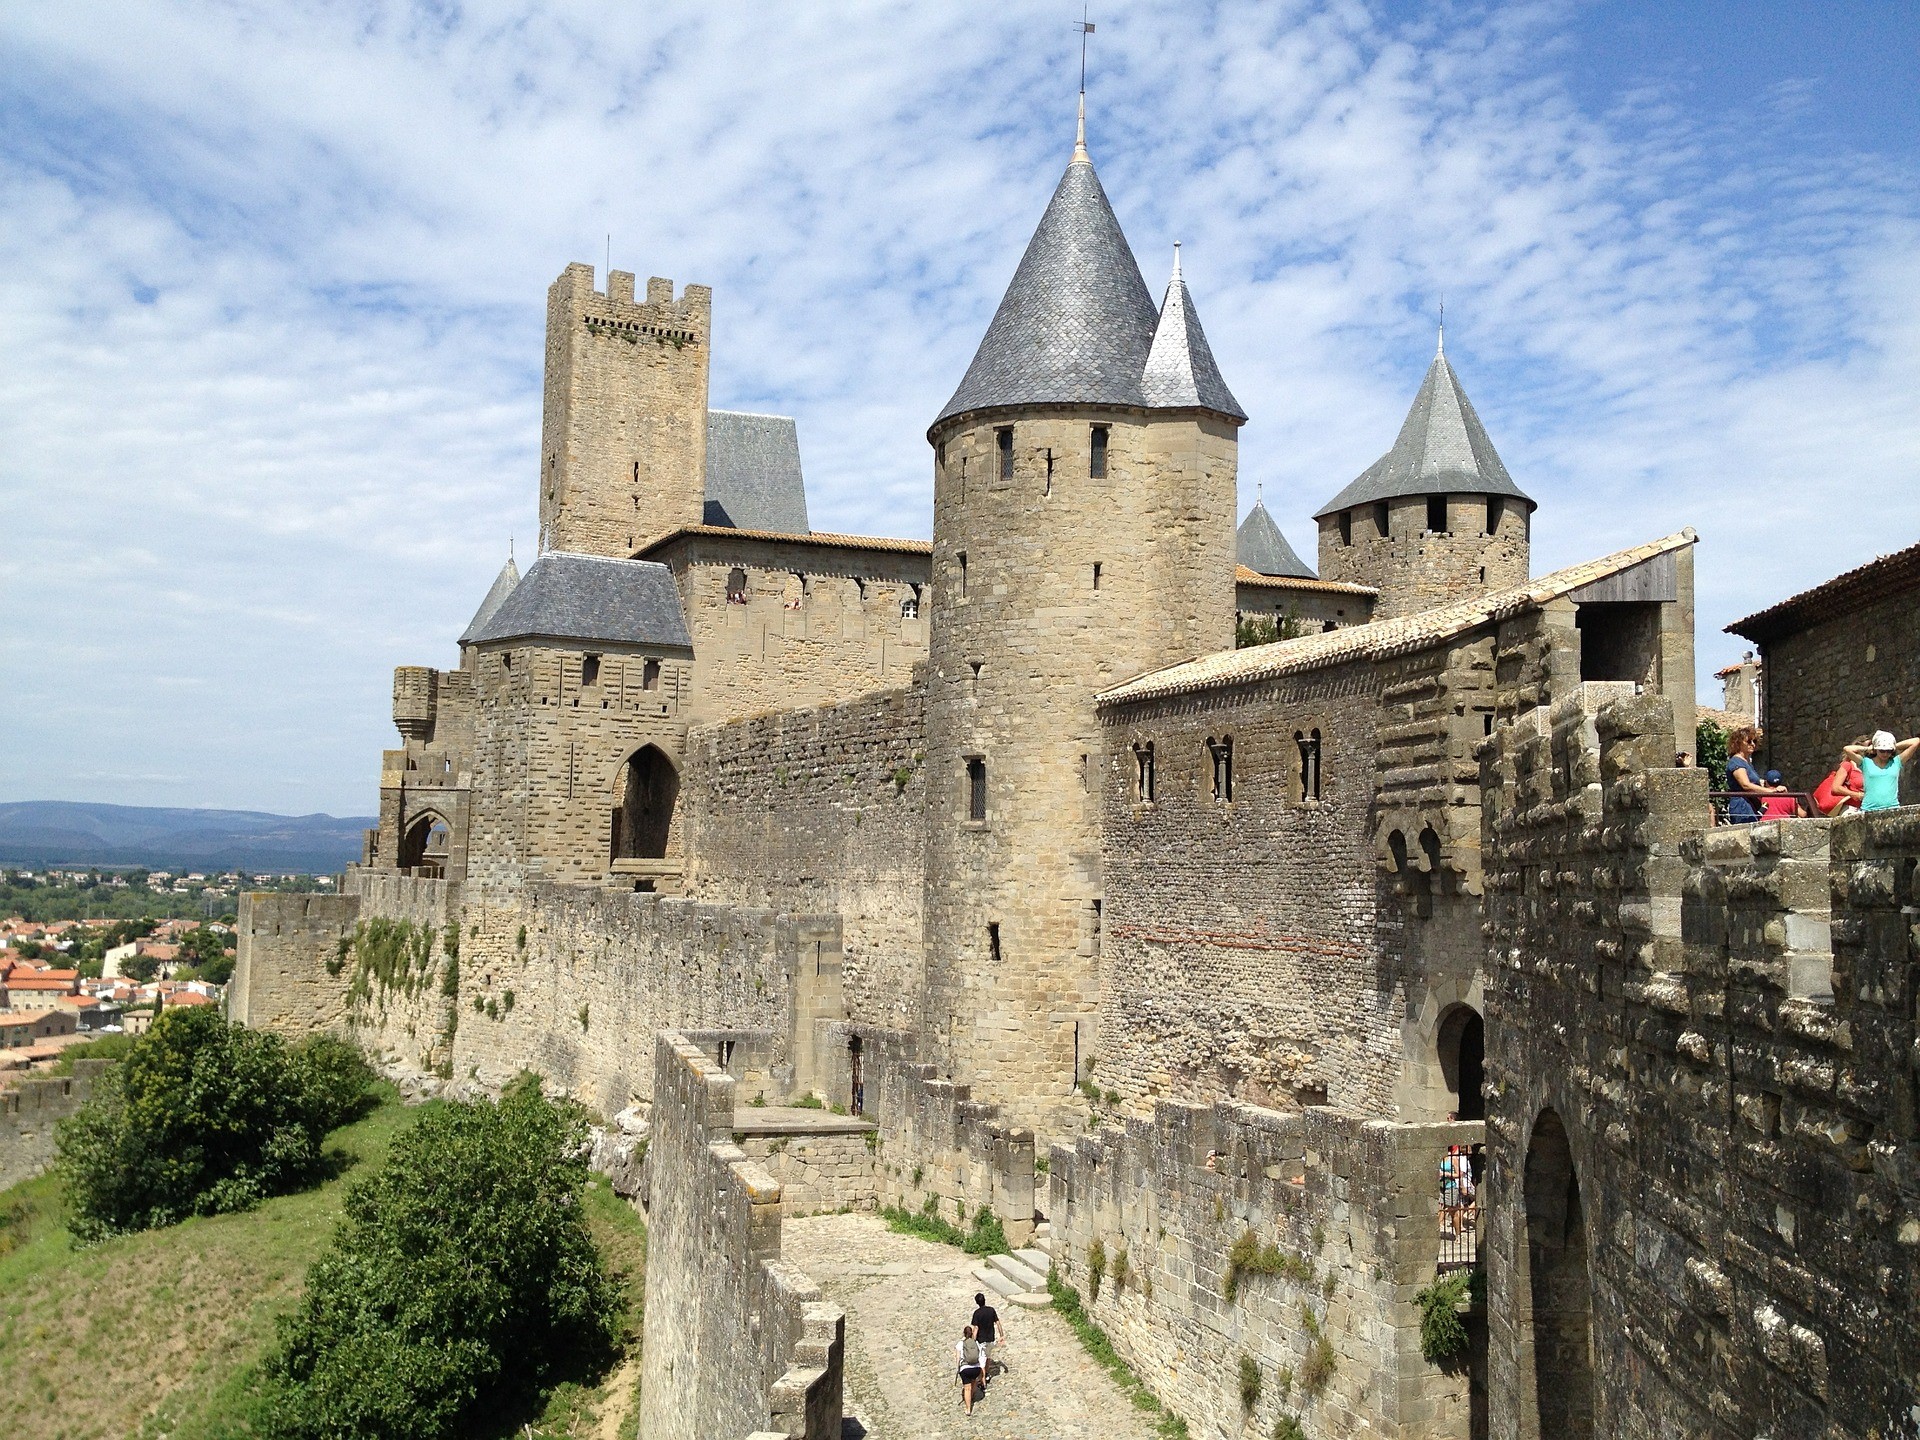 Maak avondeten Korting door elkaar haspelen Bezoek de middeleeuwse stad Carcassonne | Nieuws | Kuypers Verhuur